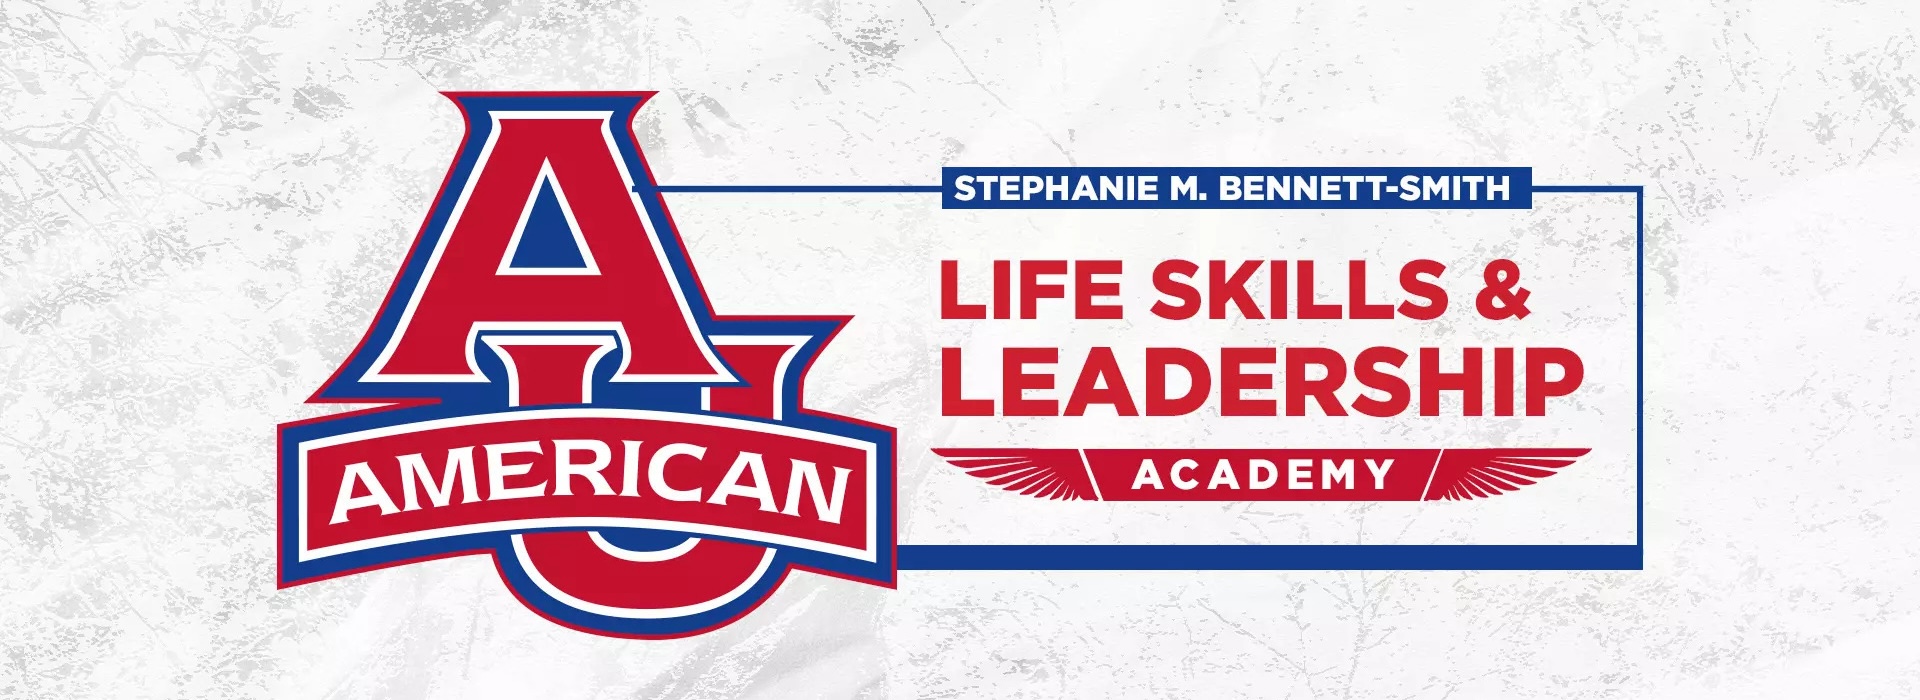 Stephanie M. Bennett-Smith Life Skills and Leadership Academy